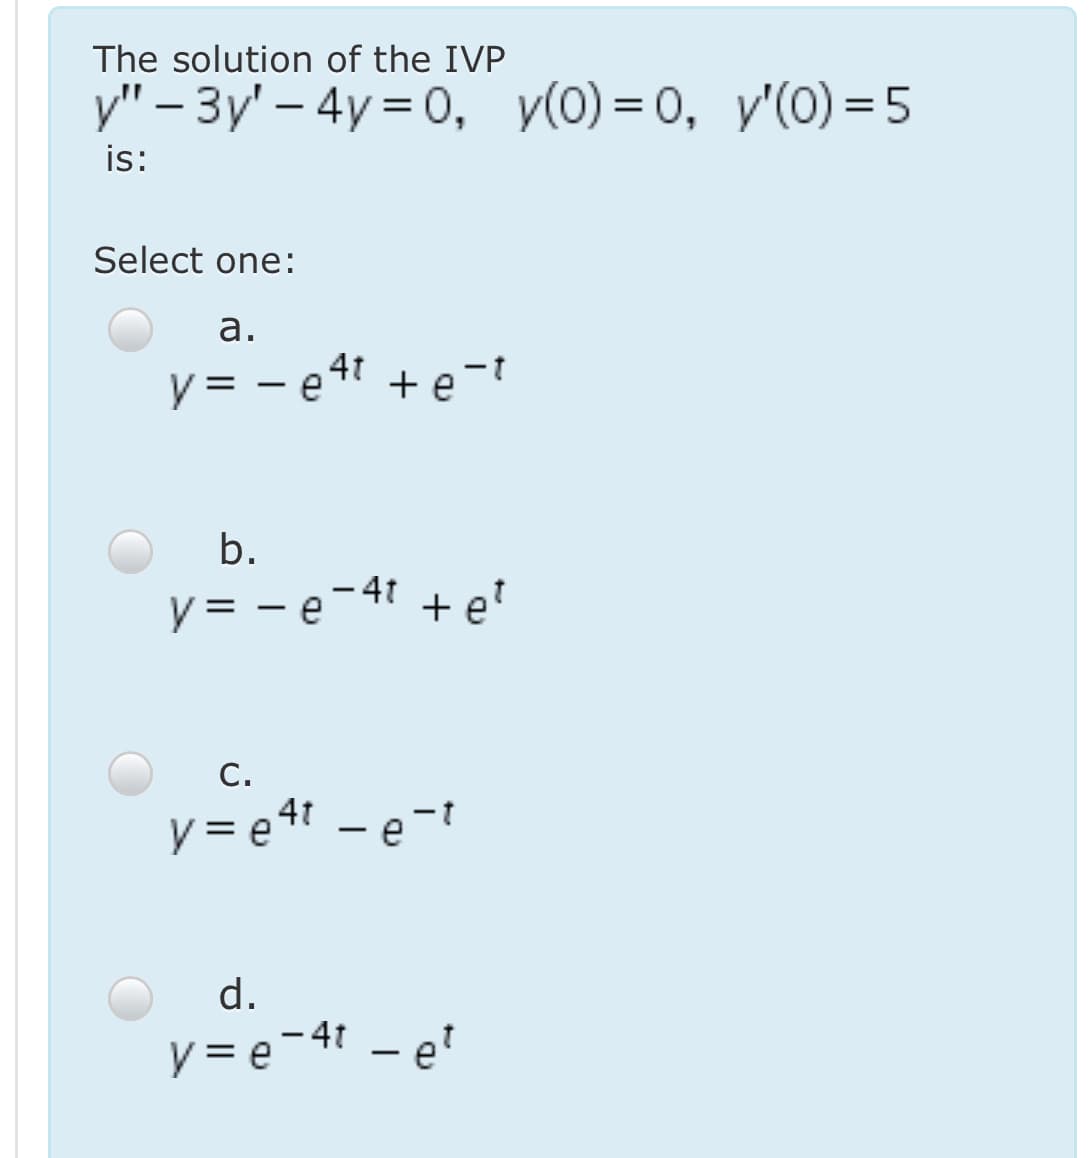 The solution of the IVP
у" - Зу' - 4y 3D0, у(0) %3D о, у'(0) 3D5
is:
Select one:
а.
y = - e4t + e-t
b.
y = - e-41 + e'
С.
y = e4t - e-t
d.
y = e-41 – e?
